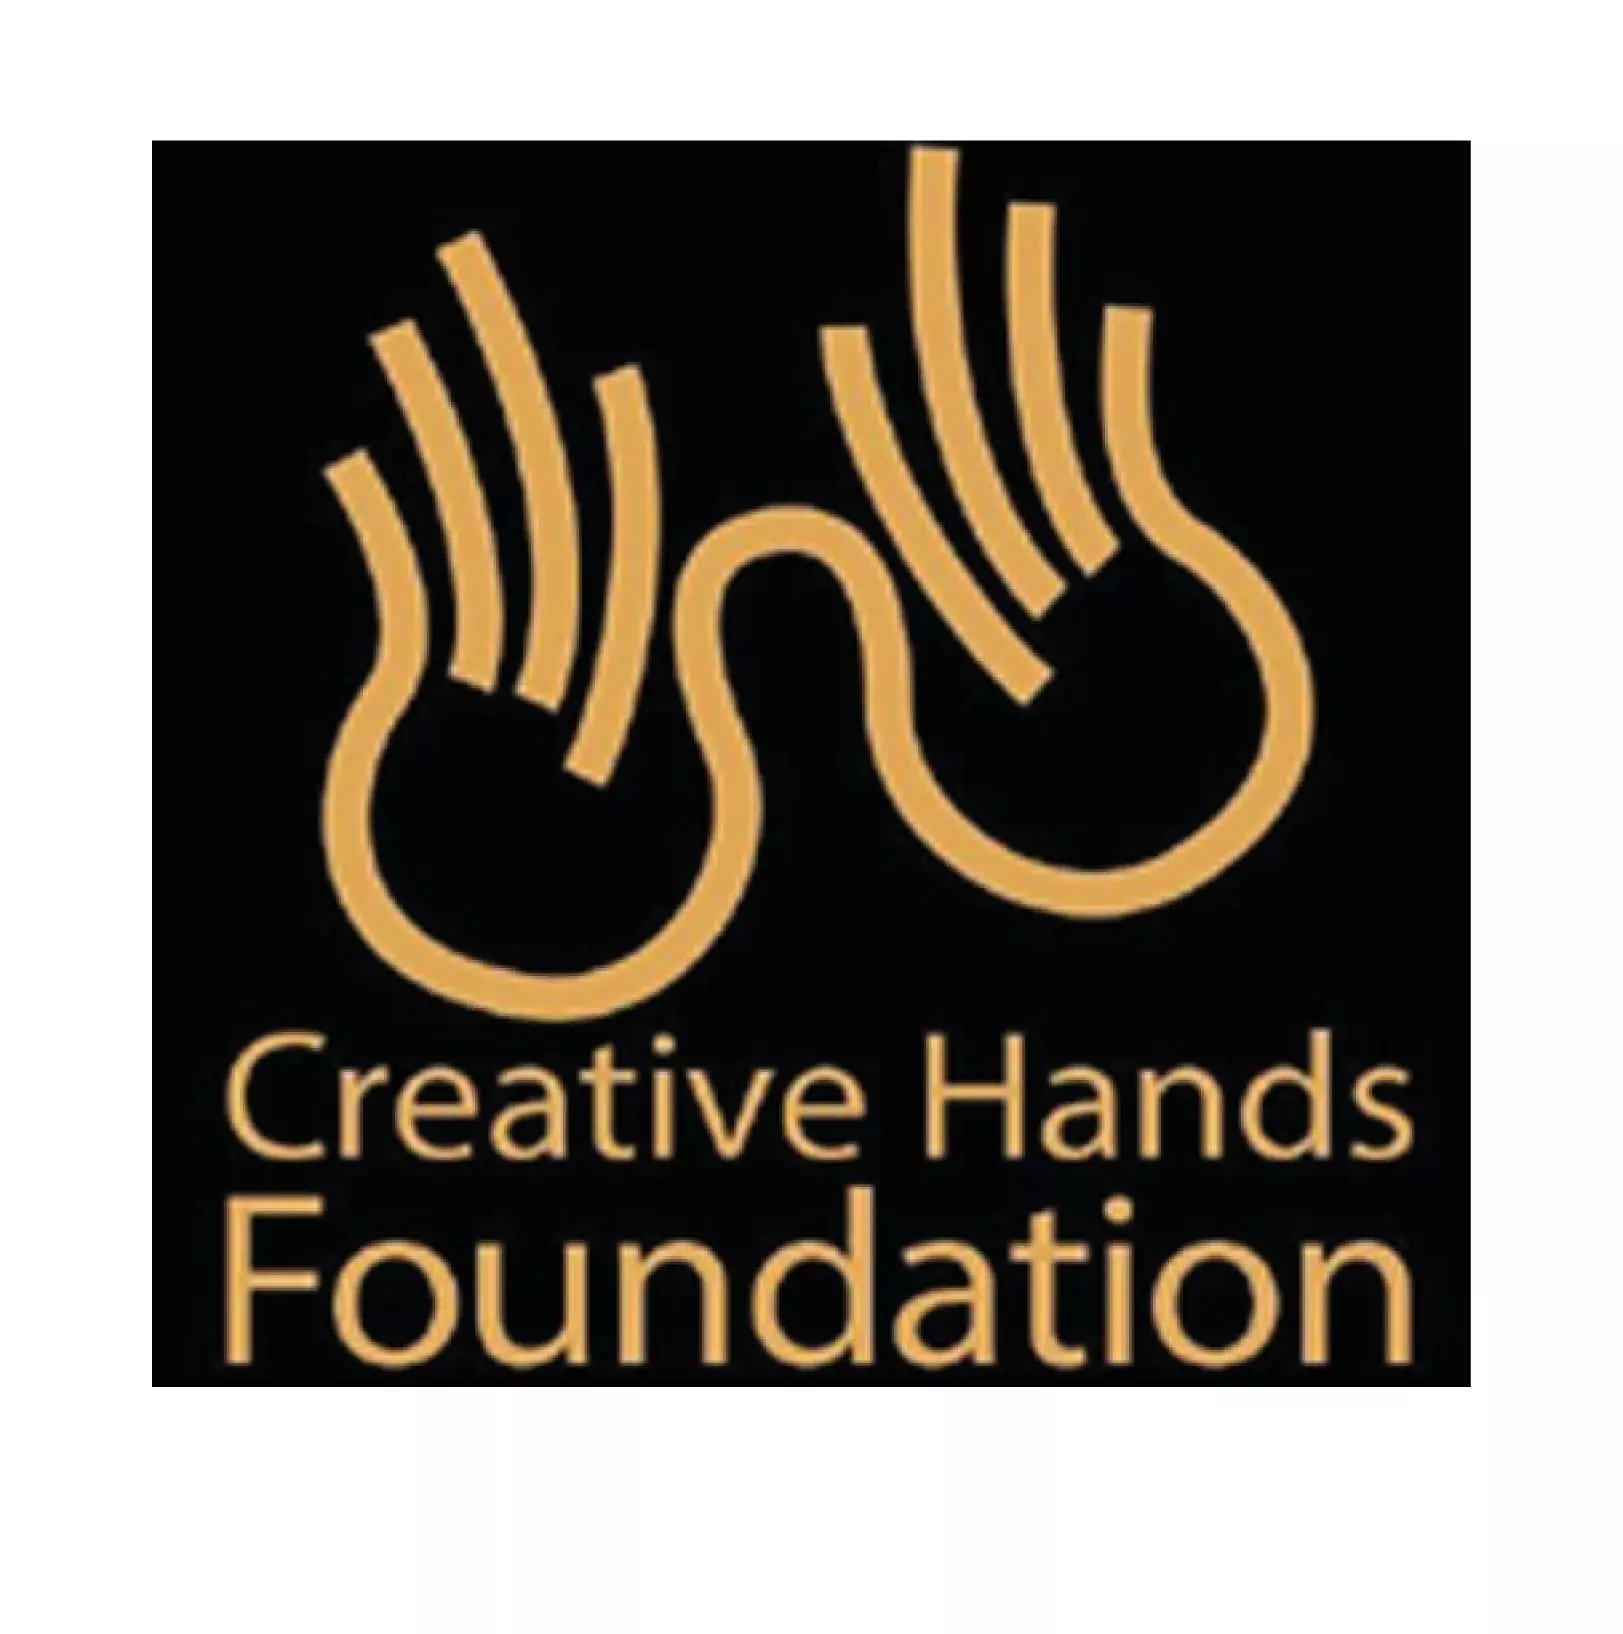 creative hands foundation square logo